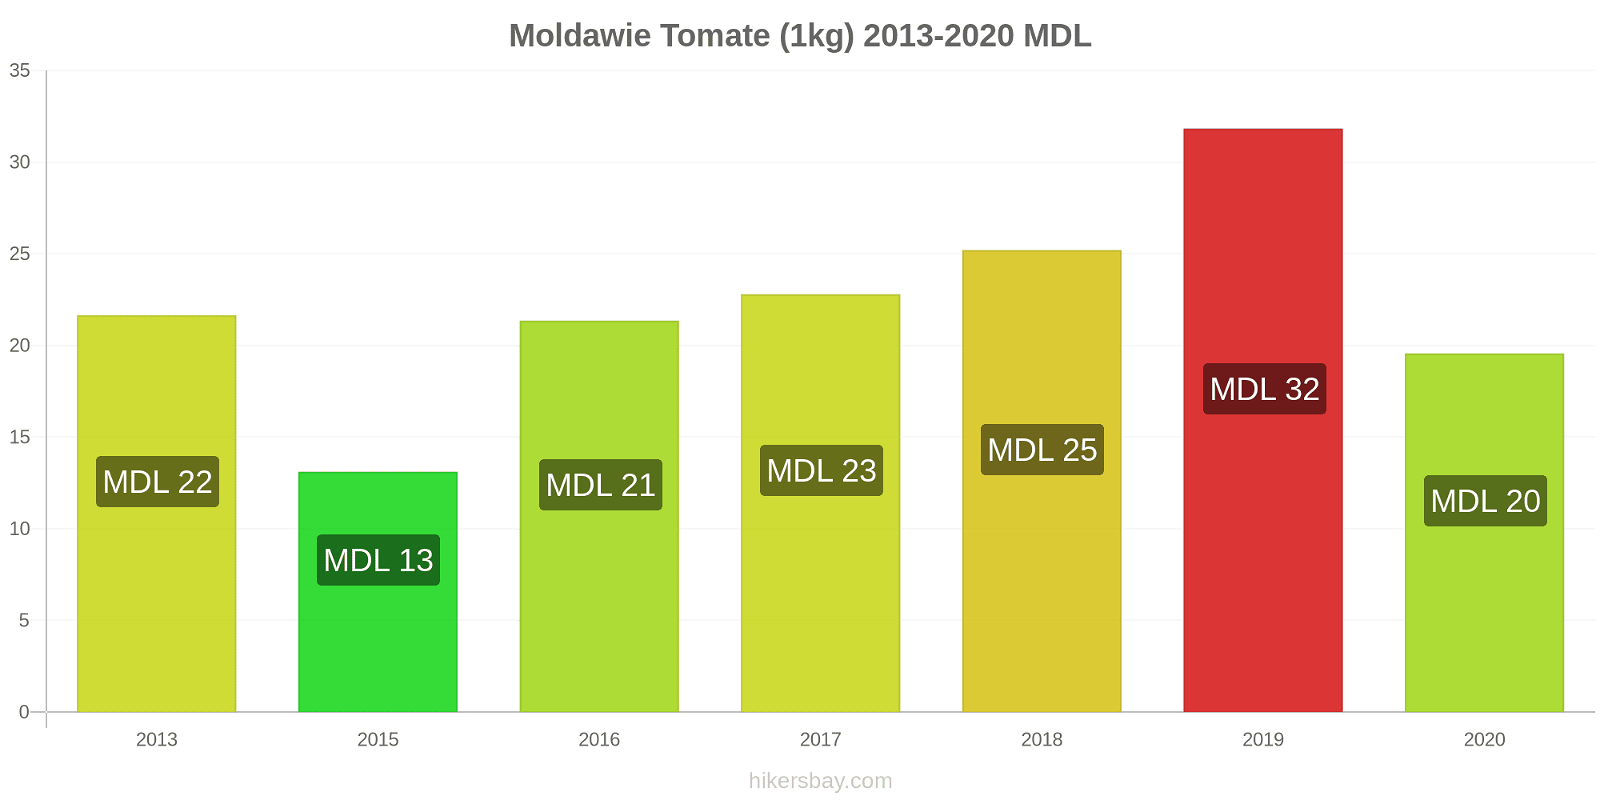 Moldawie Preisänderungen Tomaten (1kg) hikersbay.com